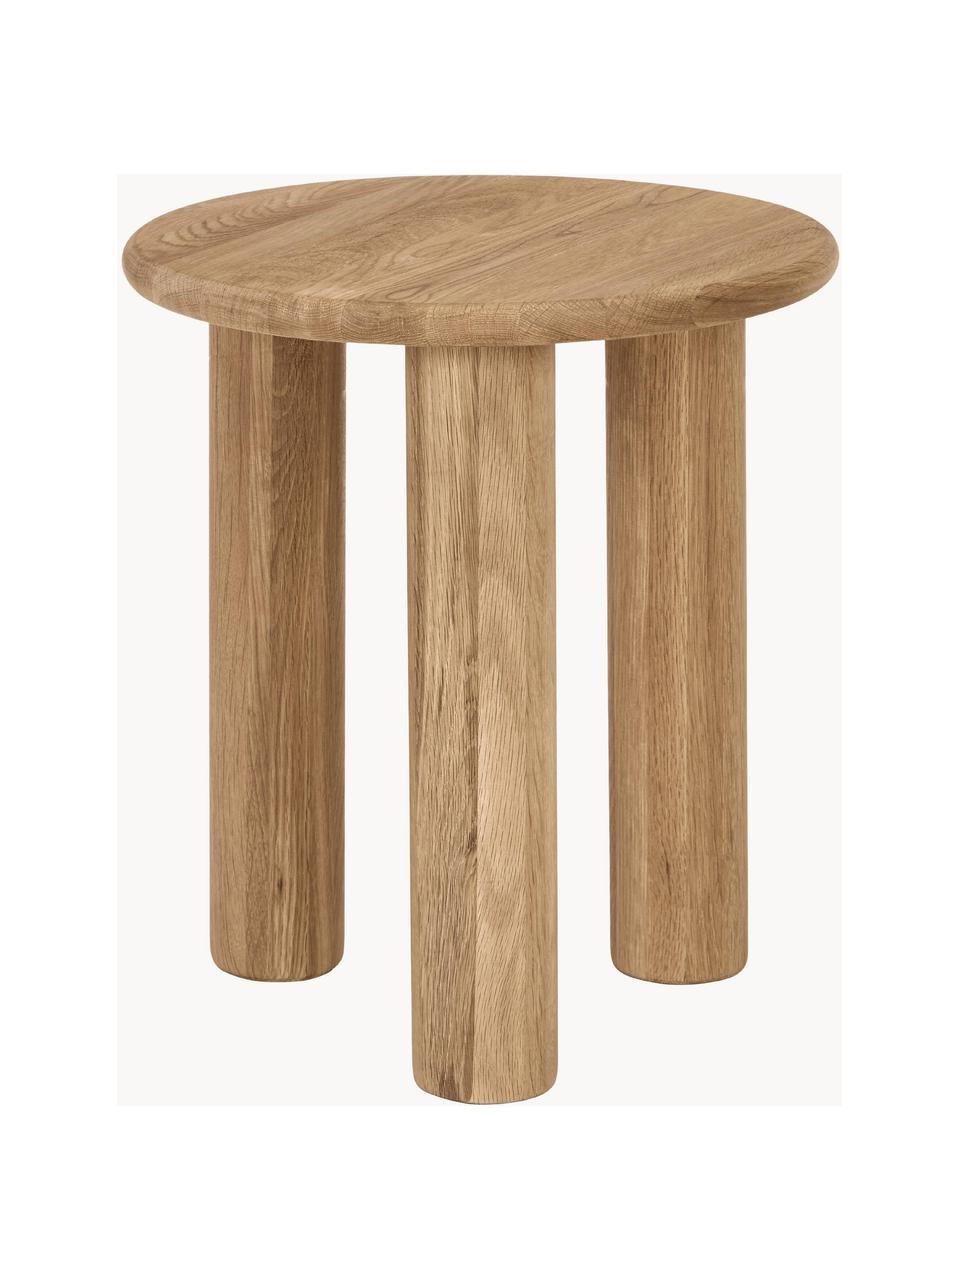 Pomocný stolík z dubového dreva Didi, Masívne dubové drevo, ošetrené olejom

Tento produkt je vyrobený z trvalo udržateľného dreva s certifikátom FSC®., Dubové drevo, Ø 40 x V 45 cm